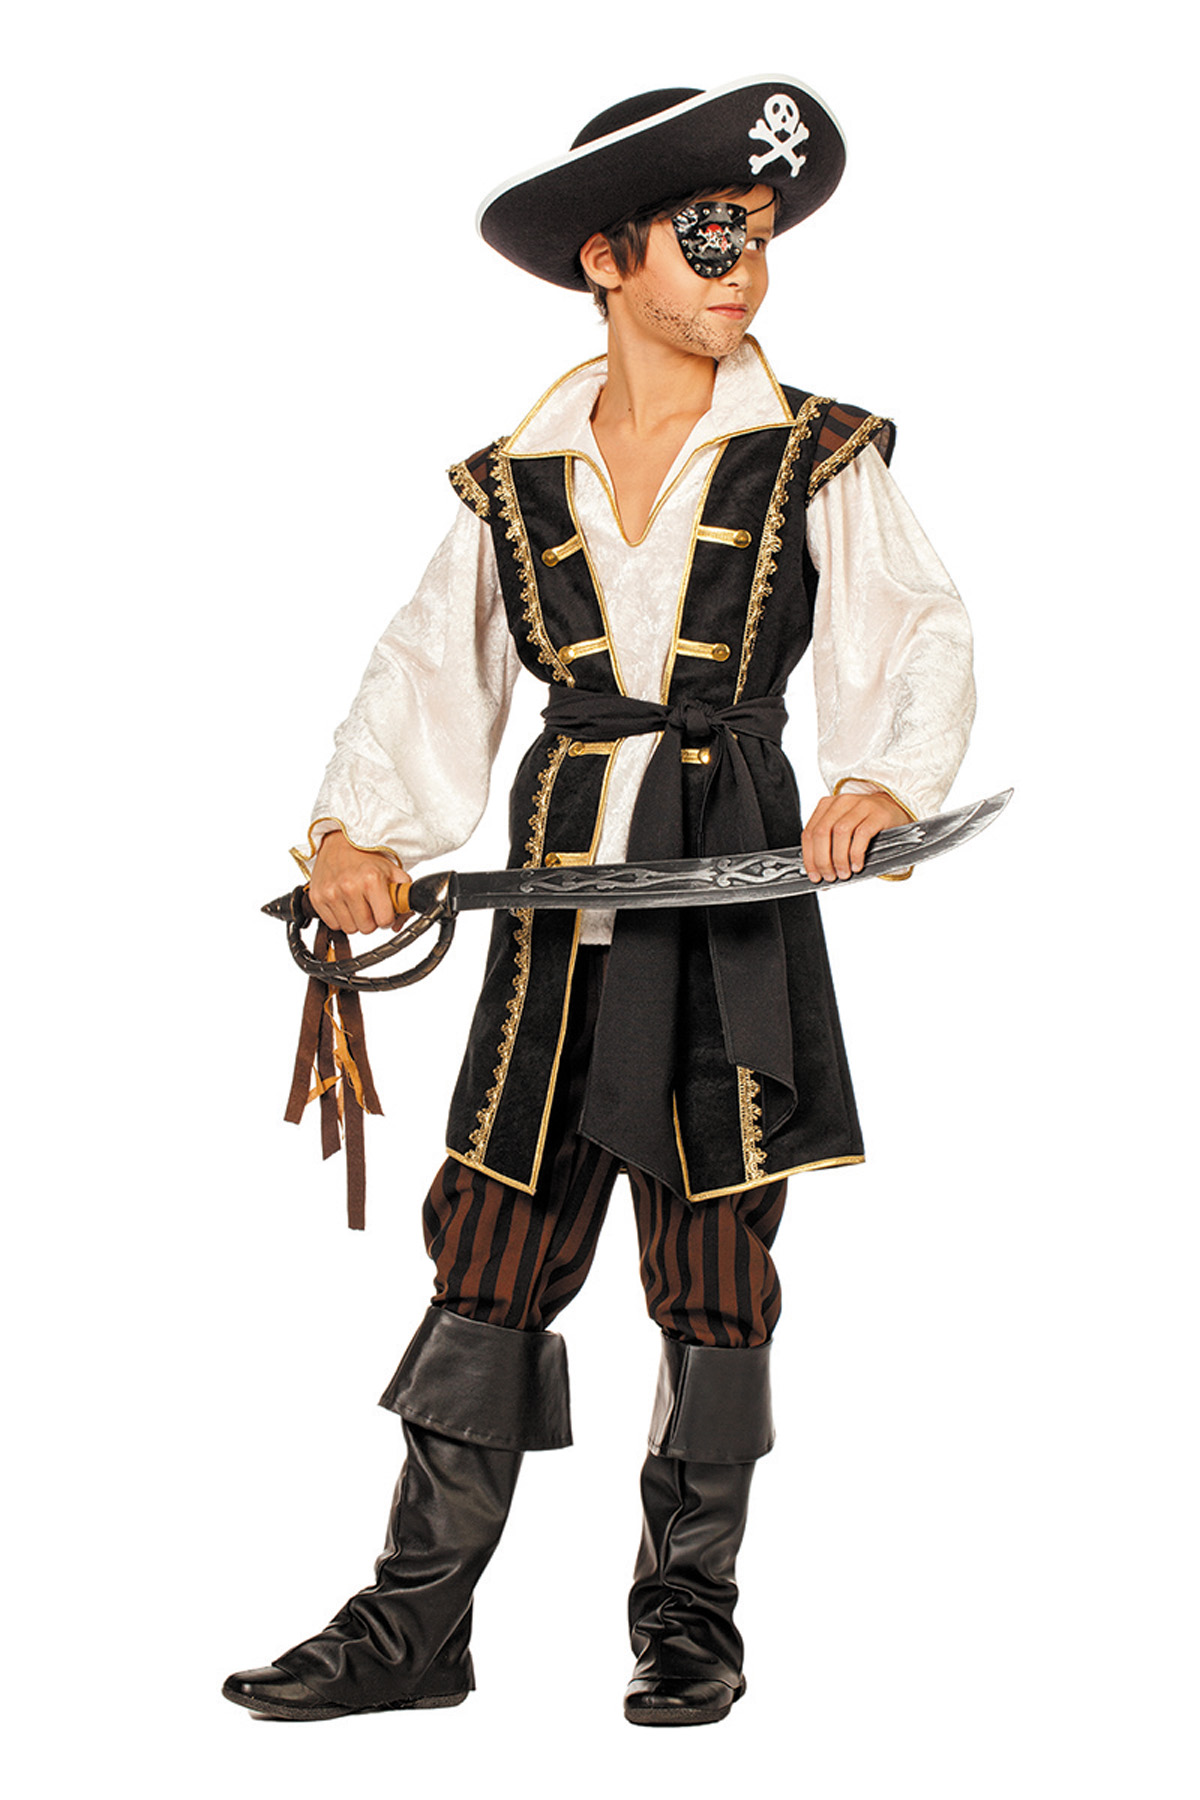 Wilbers Piraten Kostüm für Jungen – Gr. 104-164cm – Braun Schwarzer  Piratenanzug